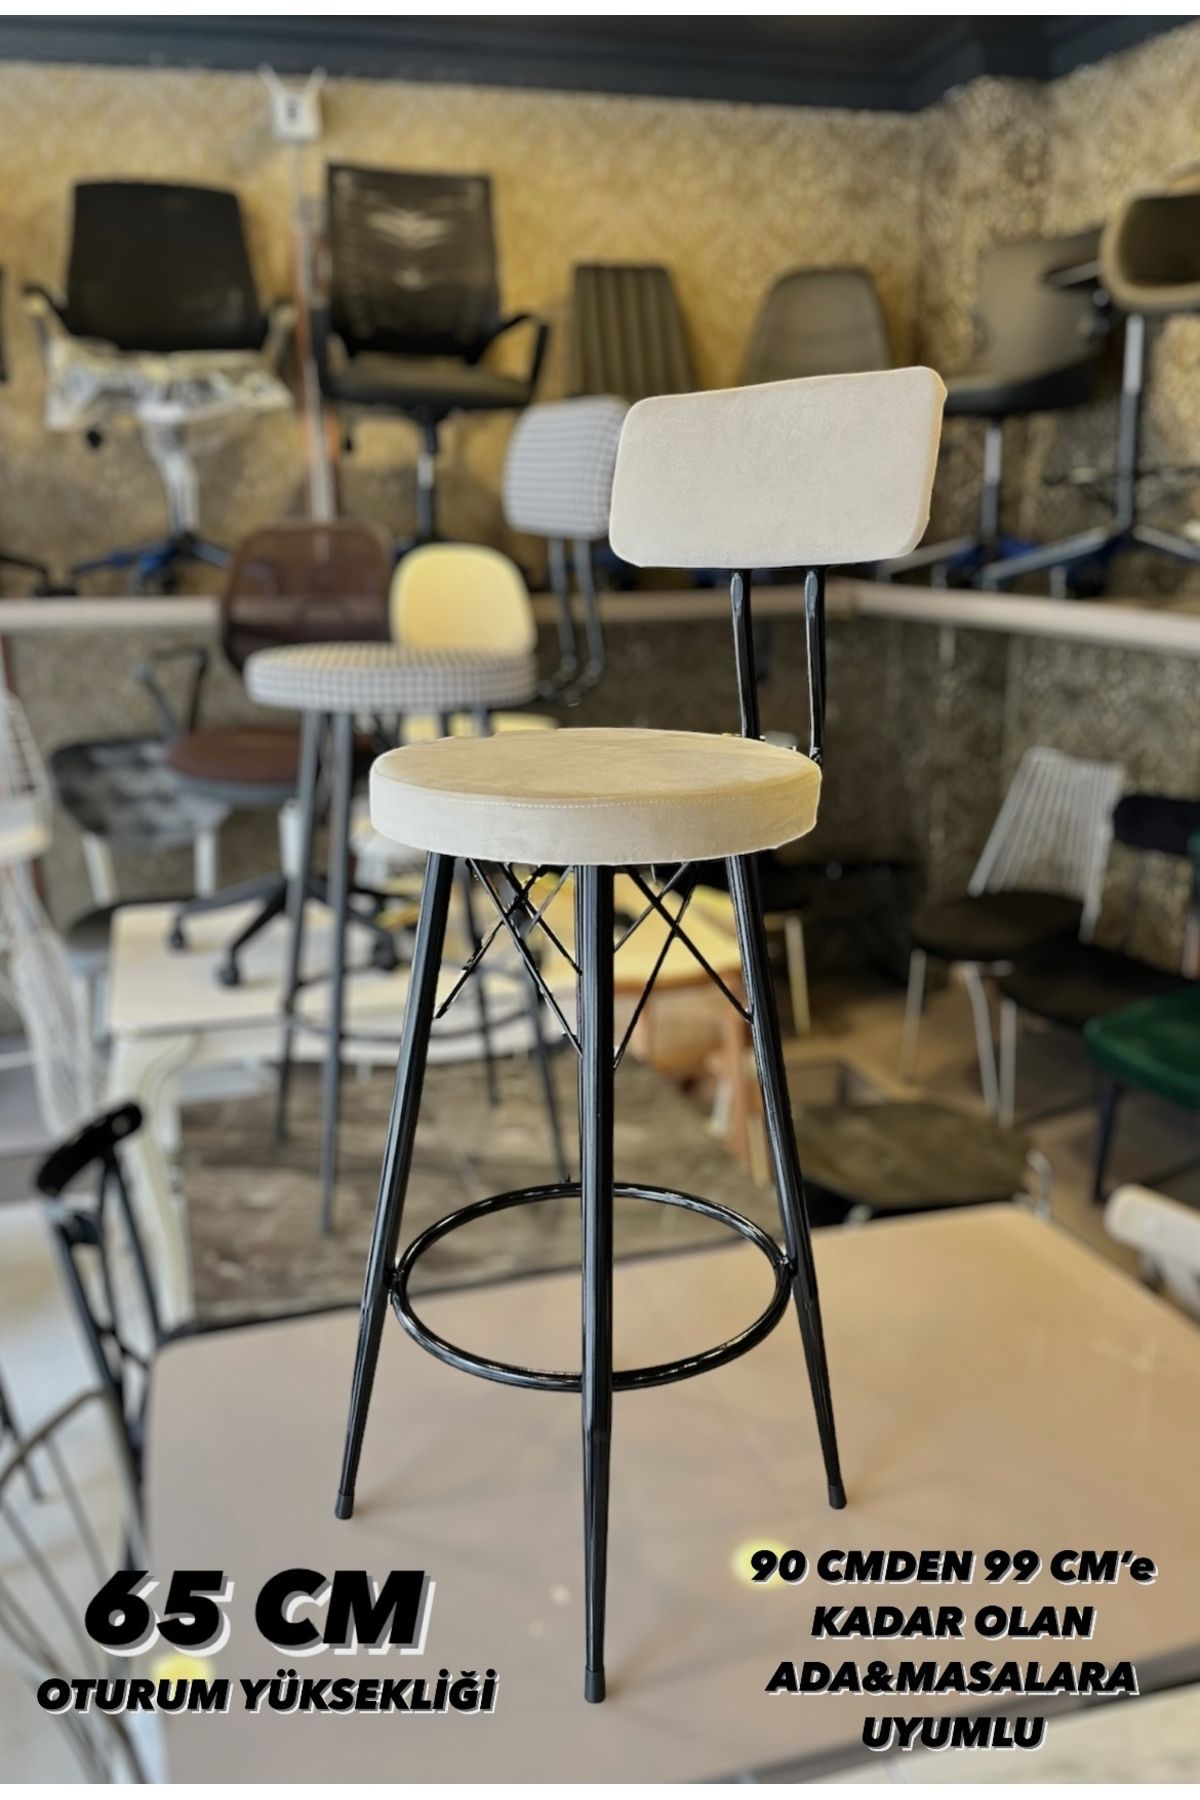 Sandalye Shop Yeni Mila Bar Sandalyesi Kırıkbeyaz 65 Cm Babyface Kumaş.90 Cm Ile 99 Cm Arası Ada&masalara Uyumlu